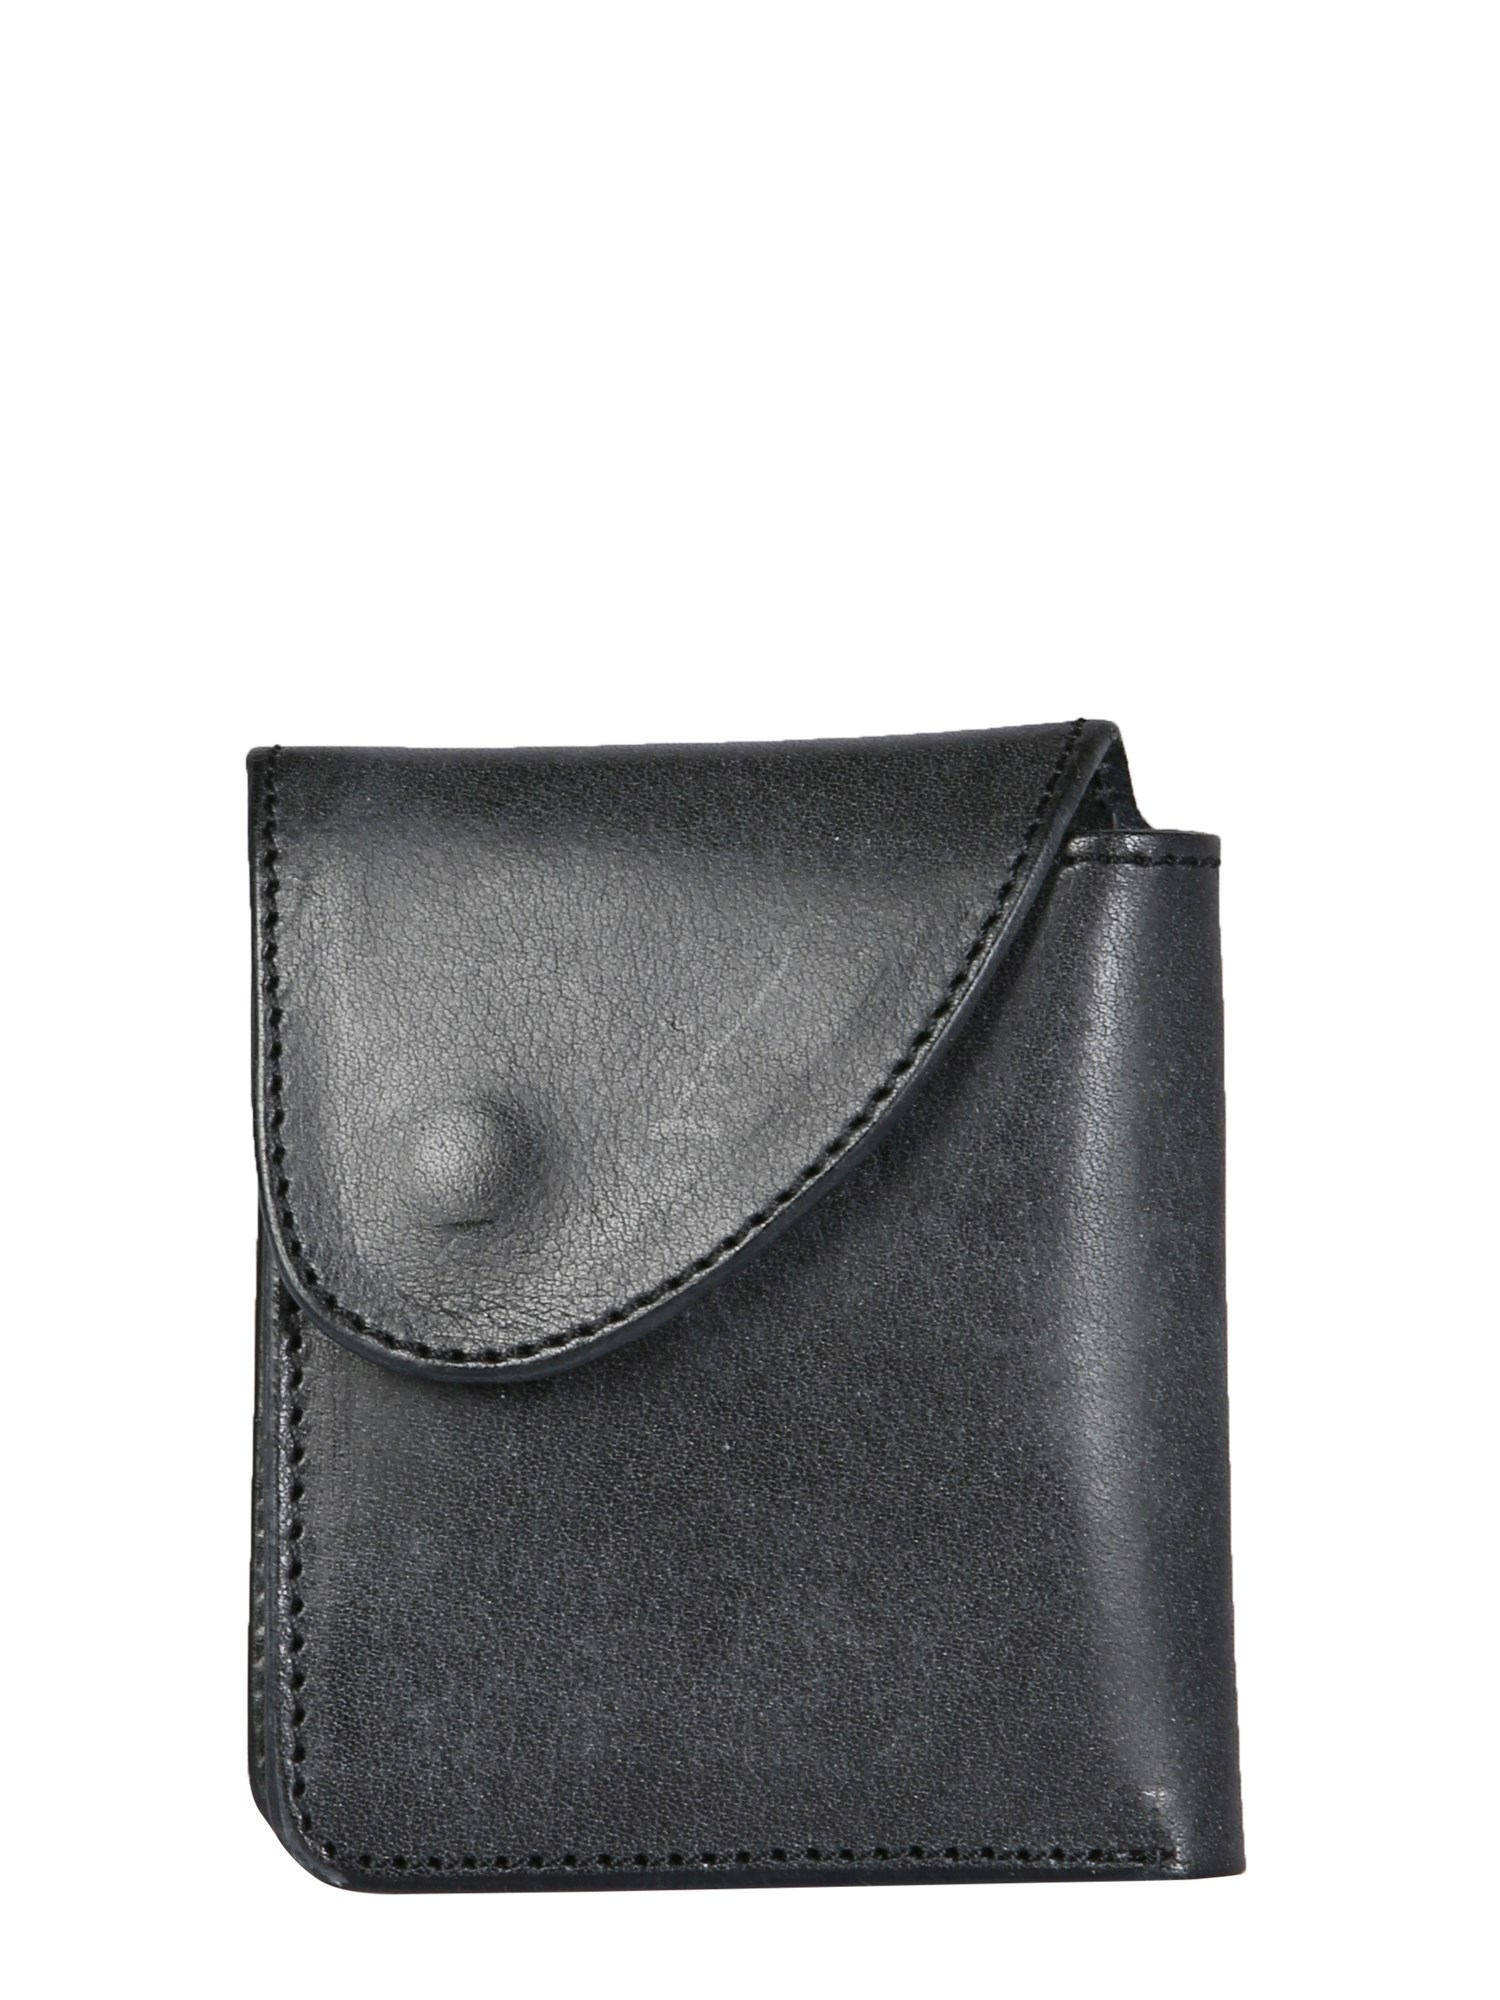 hender scheme leather wallet